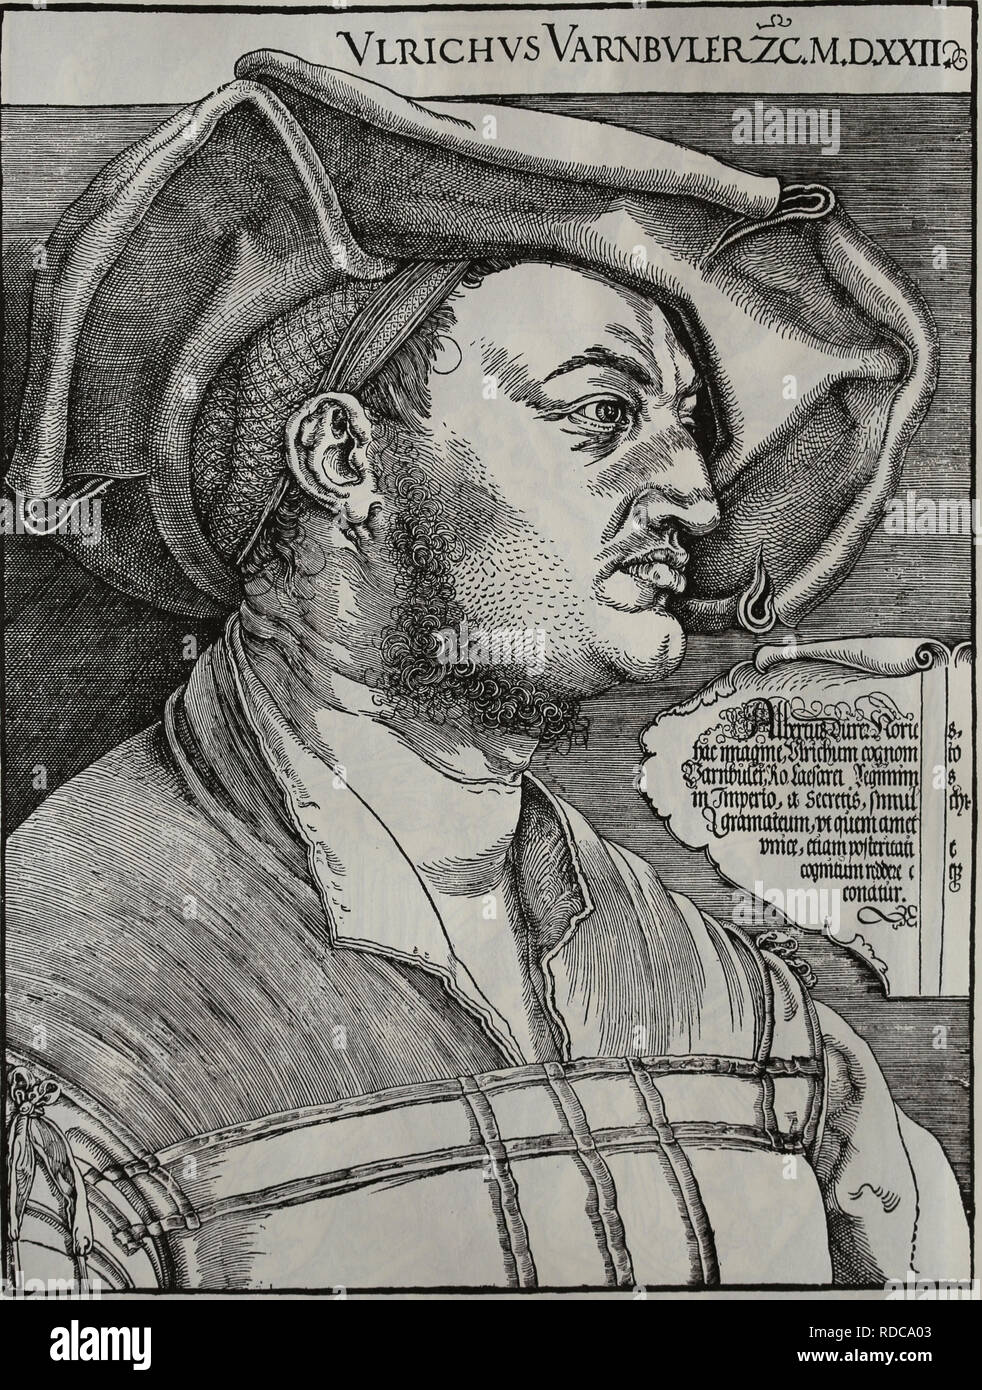 Ulrich Varnbuler (1474-1545). Diplomat. Ritratto. Incisione di Albert Durer (1471-1528). Foto Stock